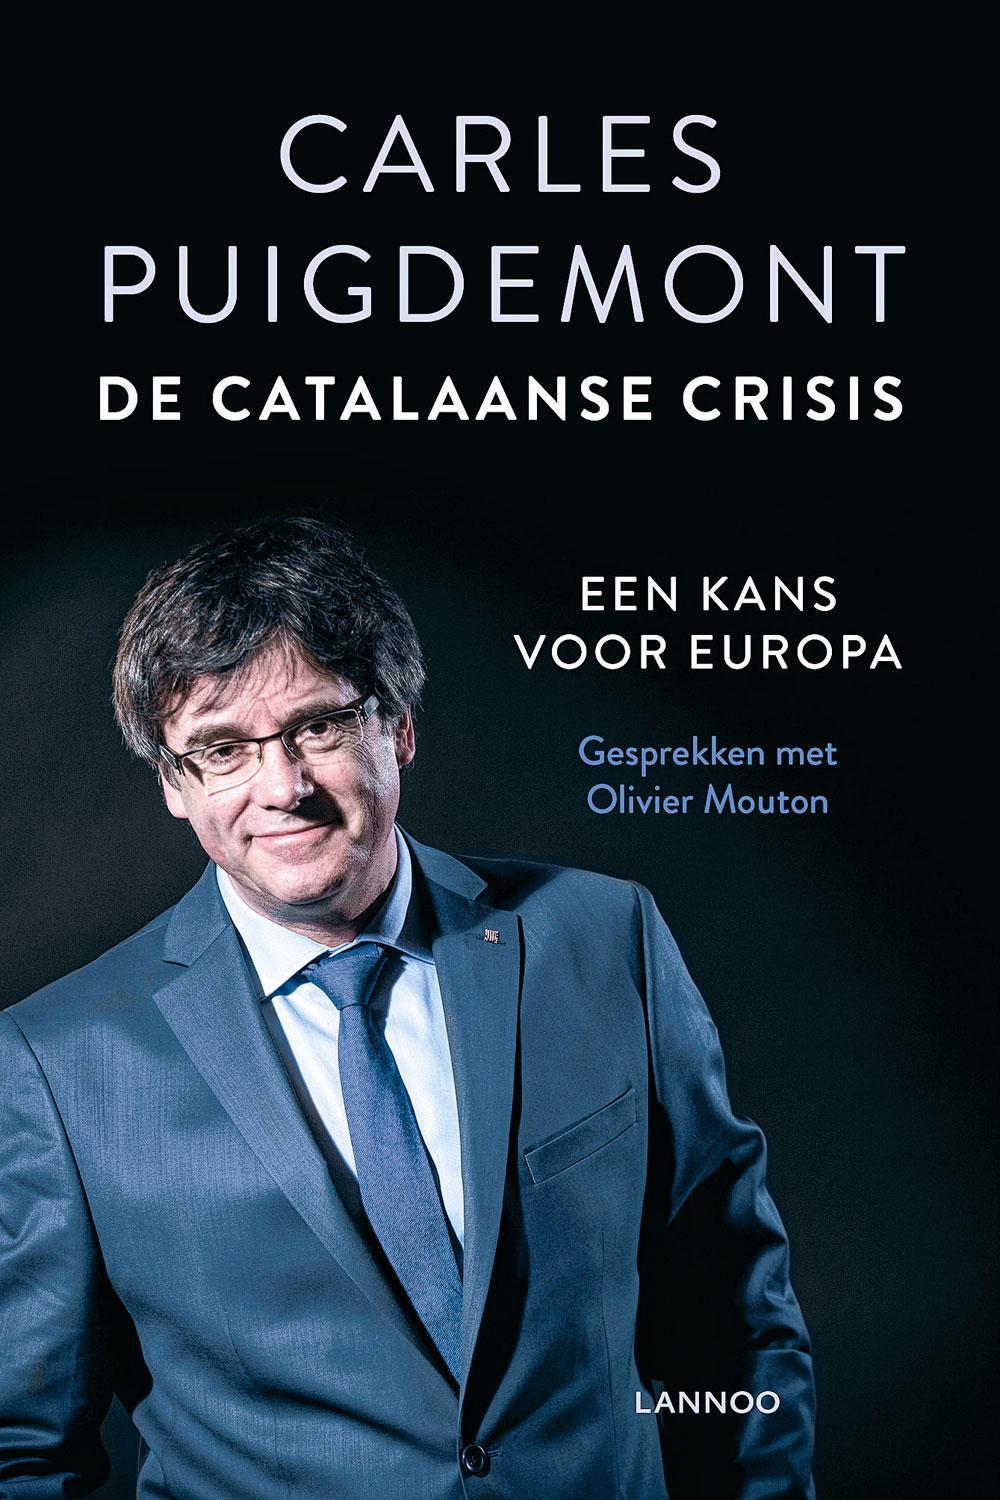 De Catalaanse crisis. Een kans voor Europa, Carles Puigdemont in gesprek met Olivier Mouton, Lannoo, 21,99 euro.